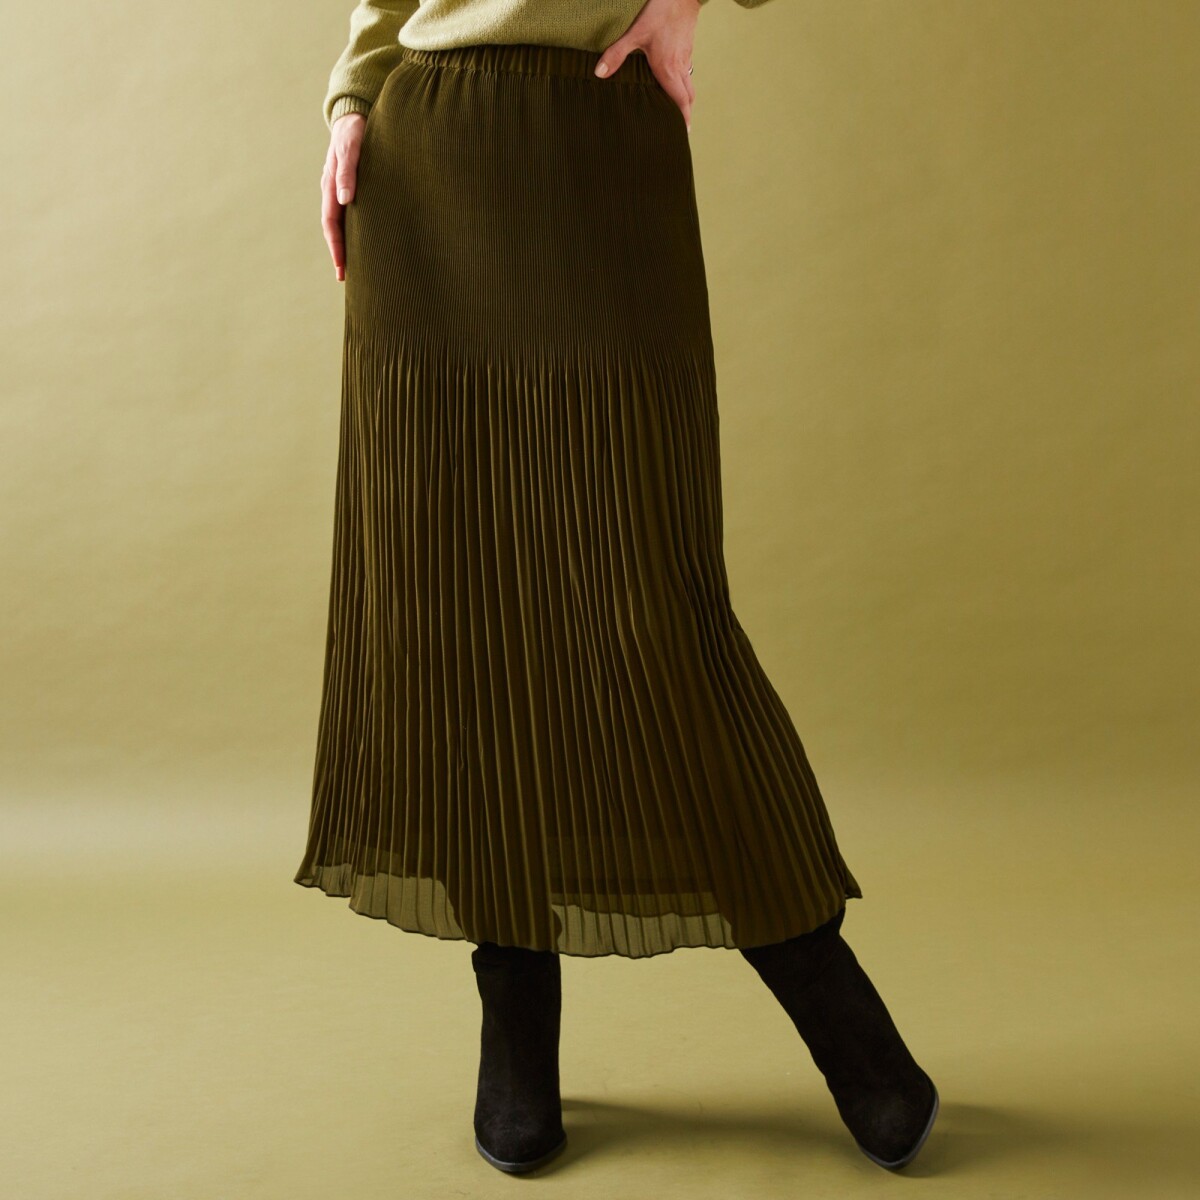 Voálová plisovaná sukně z recyklovaného polyesteru, pro malou postavu